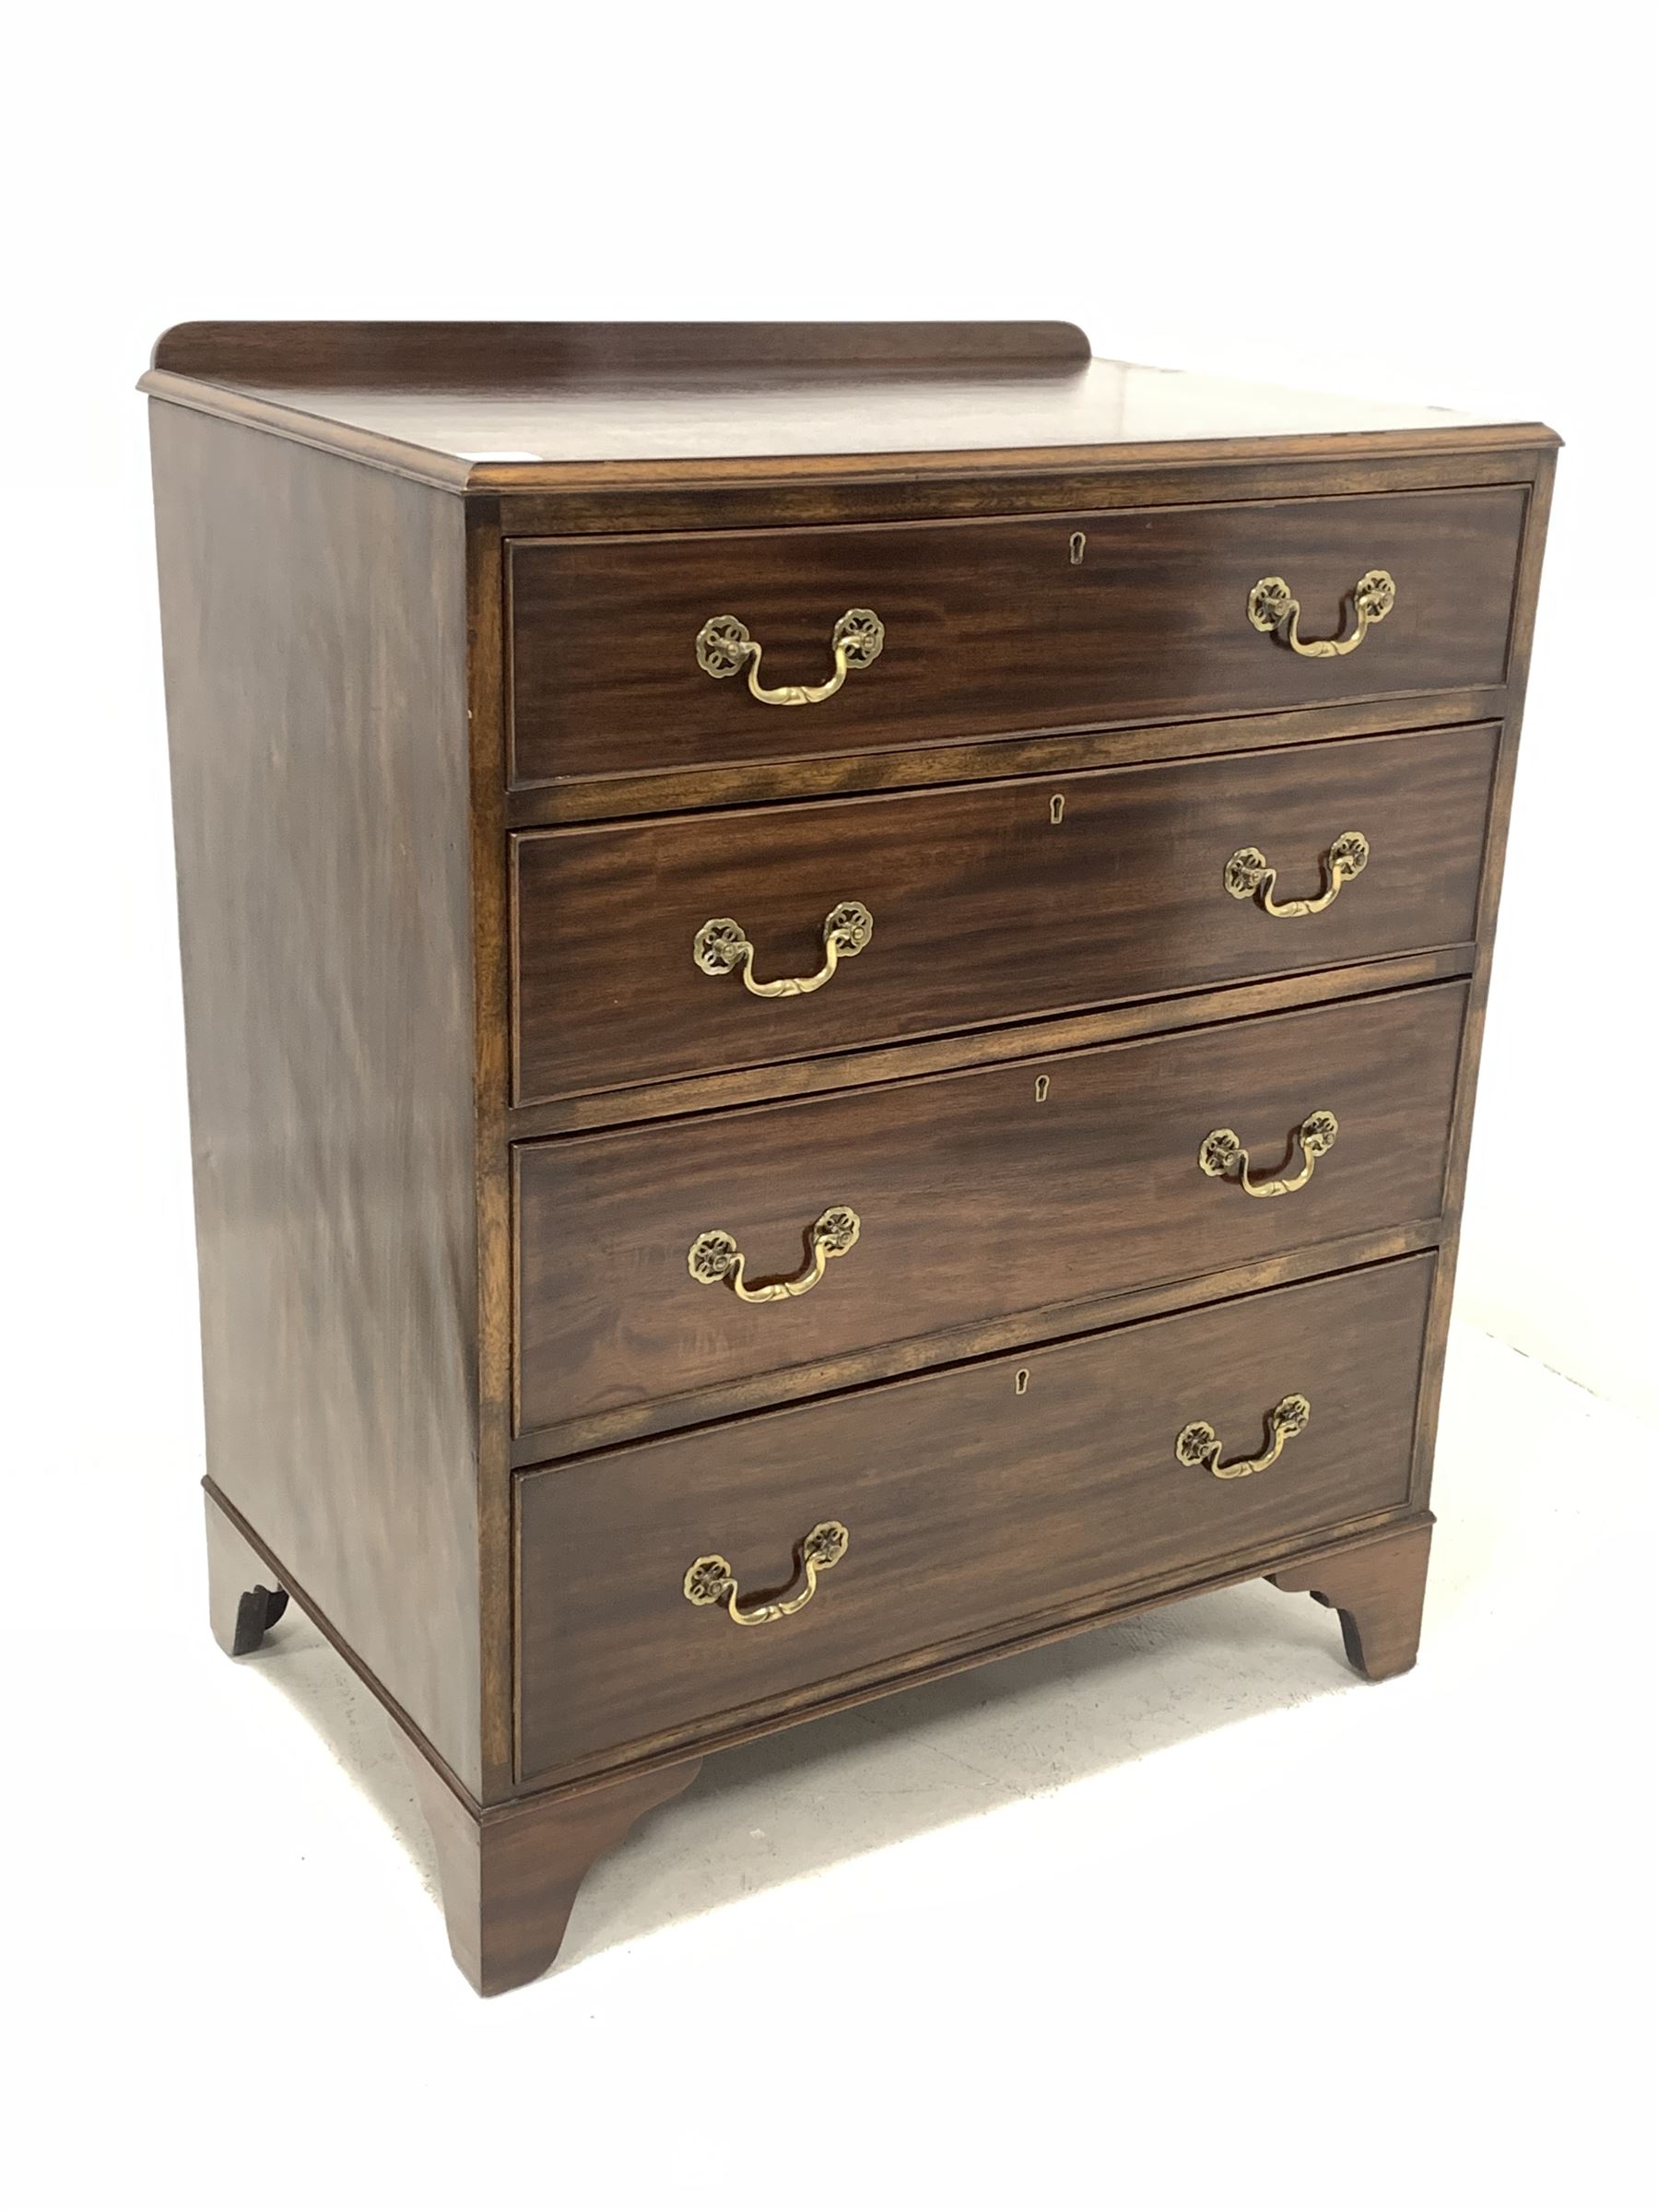 Early to mid 20th century mahogany chest